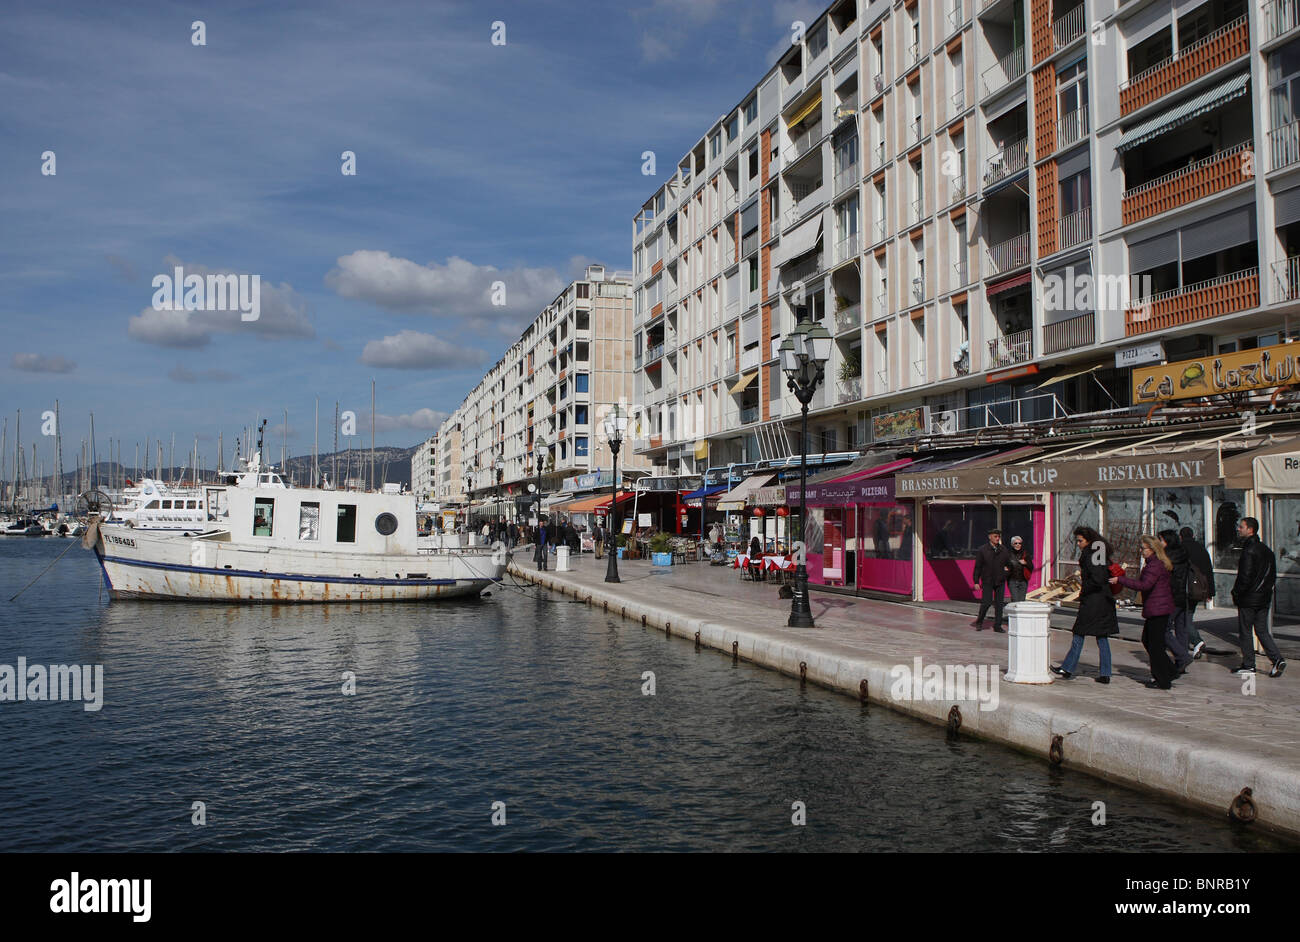 Bateau de pêche et des cafés dans le port de Toulon, Var, Cote d'Azur, Provence, France, Europe Banque D'Images